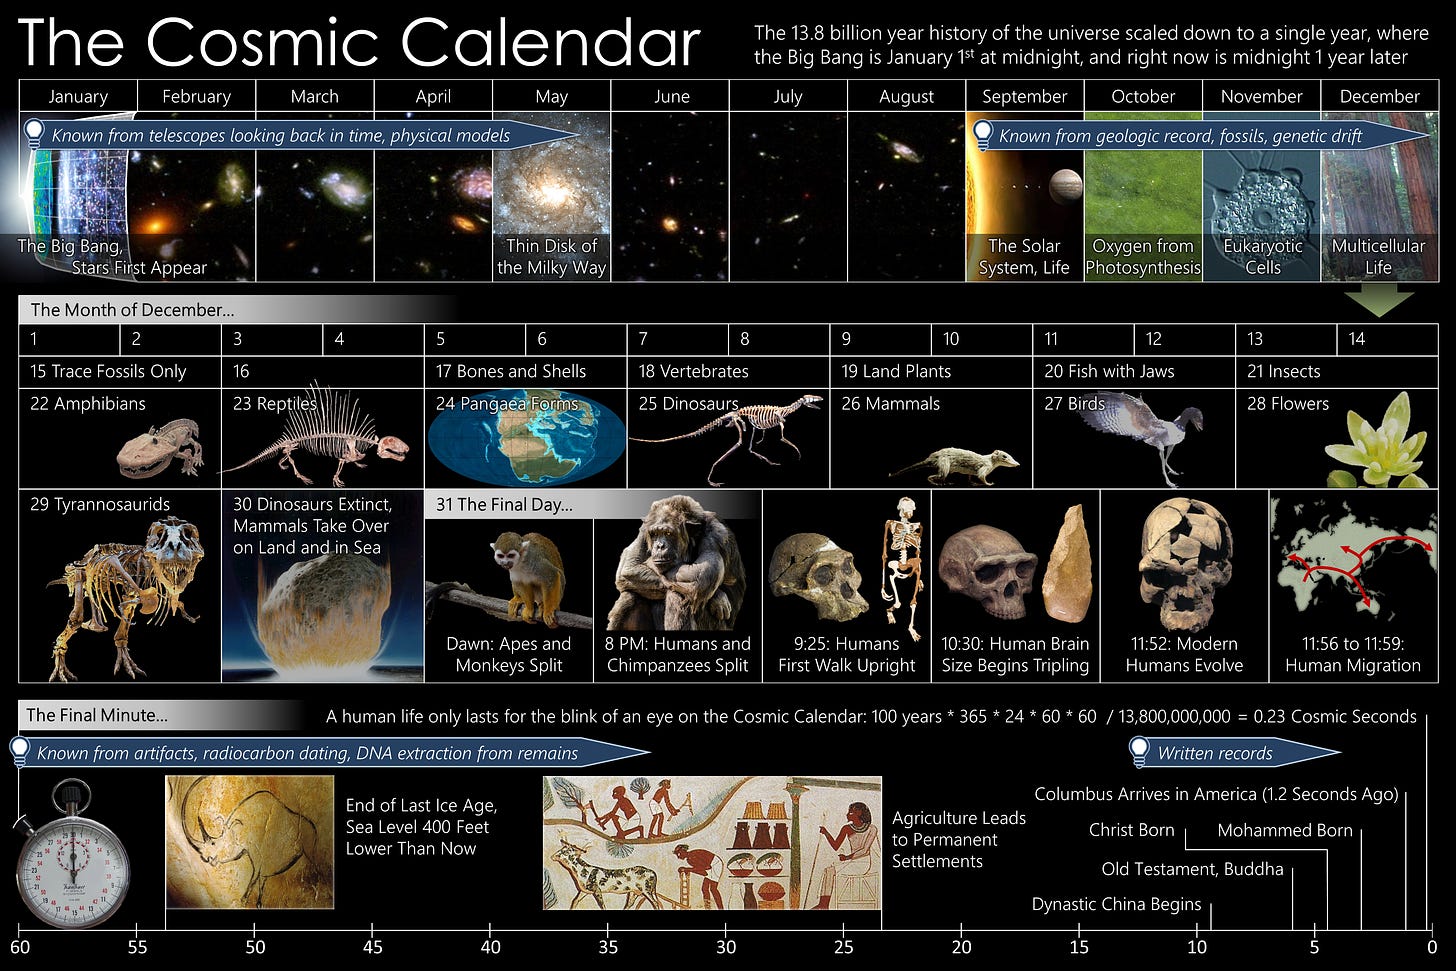 Calendario cósmico - Wikipedia, la enciclopedia libre